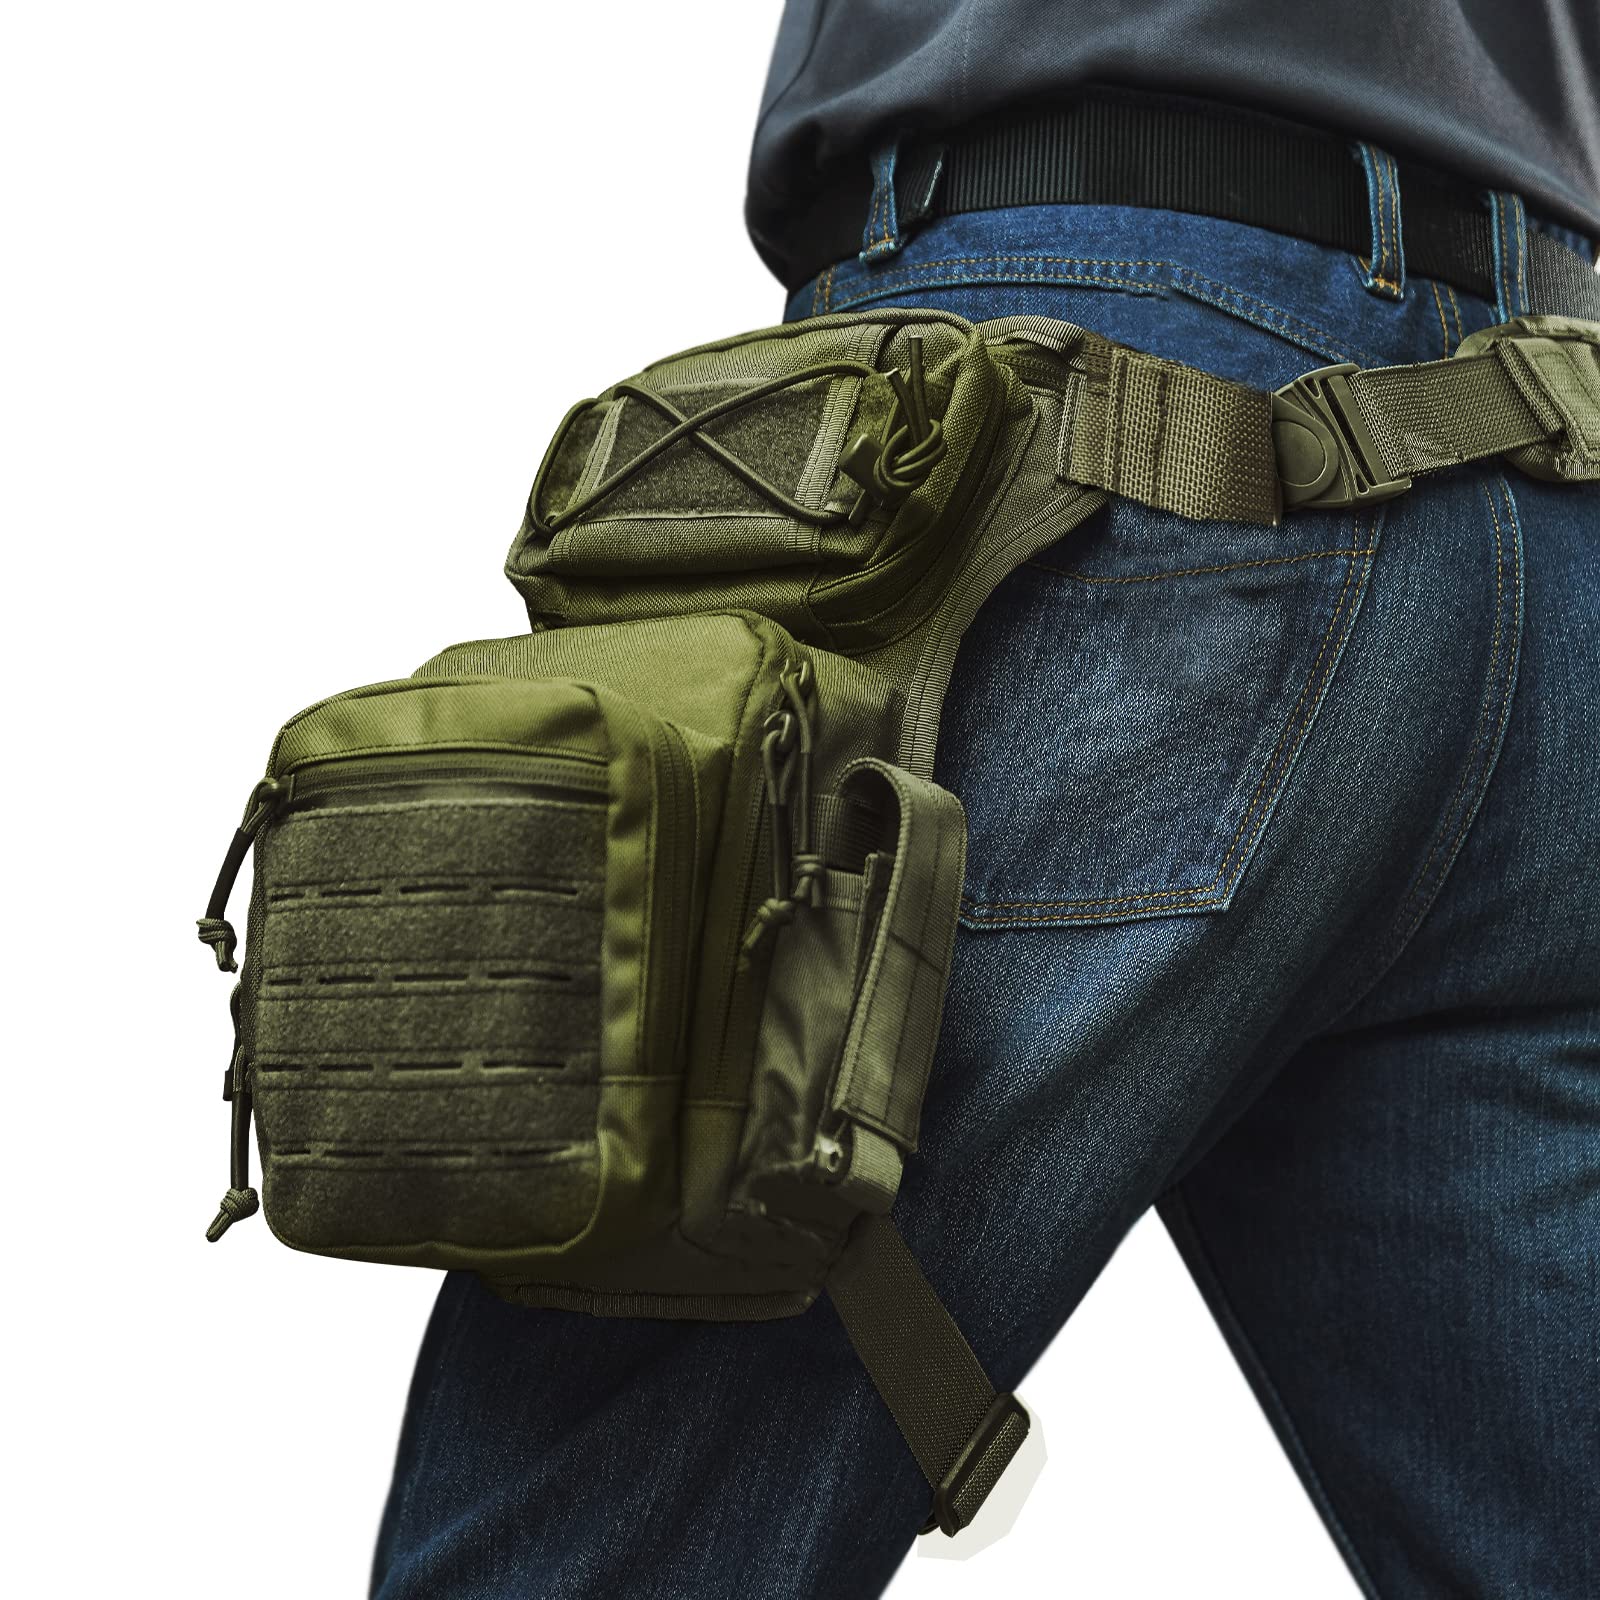 Beg Poket Kaki Jatuh Taktikal 1